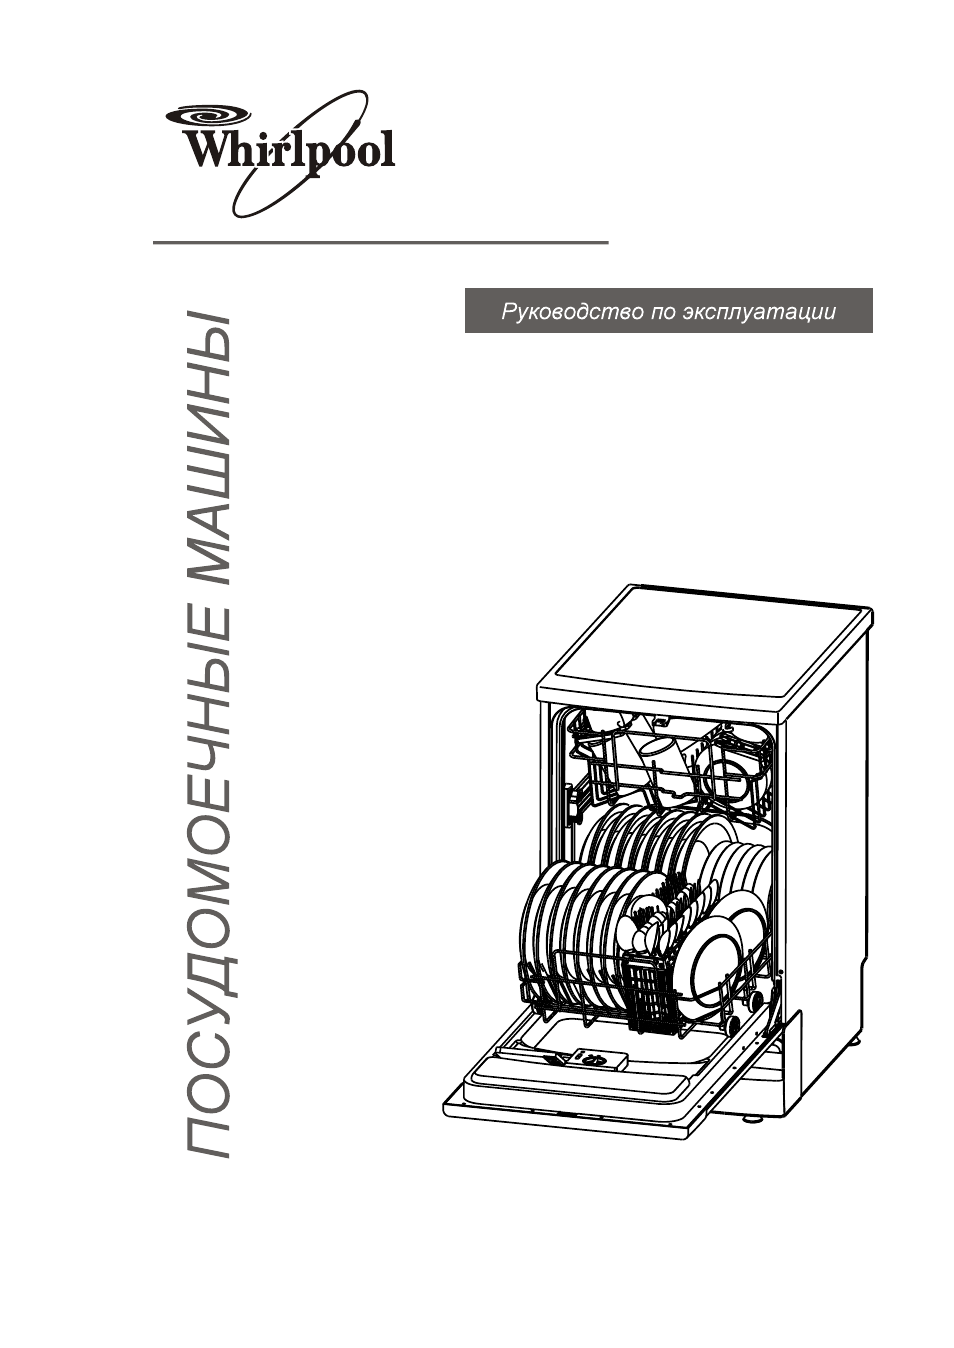 Инструкция по эксплуатации посудомоечной машины whirlpool